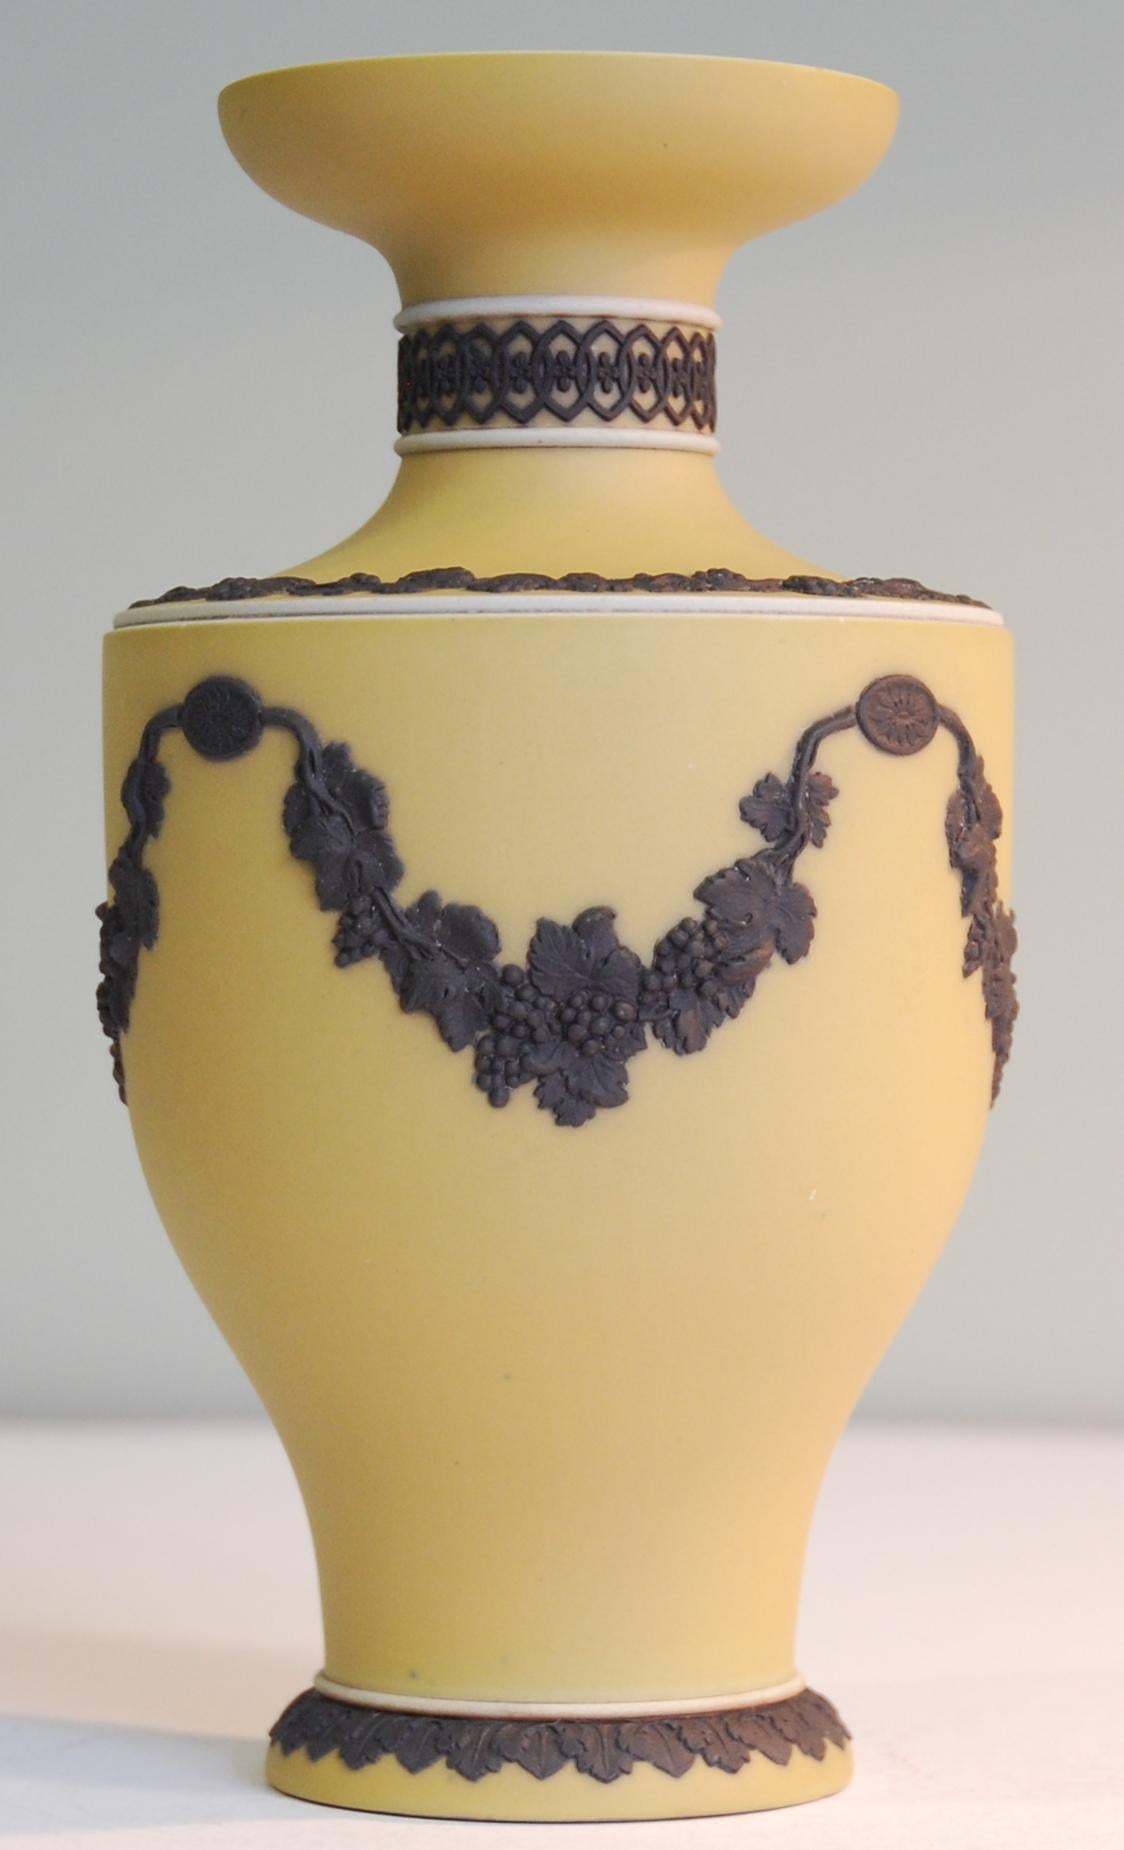 Eine seltene Form, in der seltenen buff jasper dip mit schwarzem Ornament. Eine auffällige und ungewöhnliche Farbkombination in Jaspis.